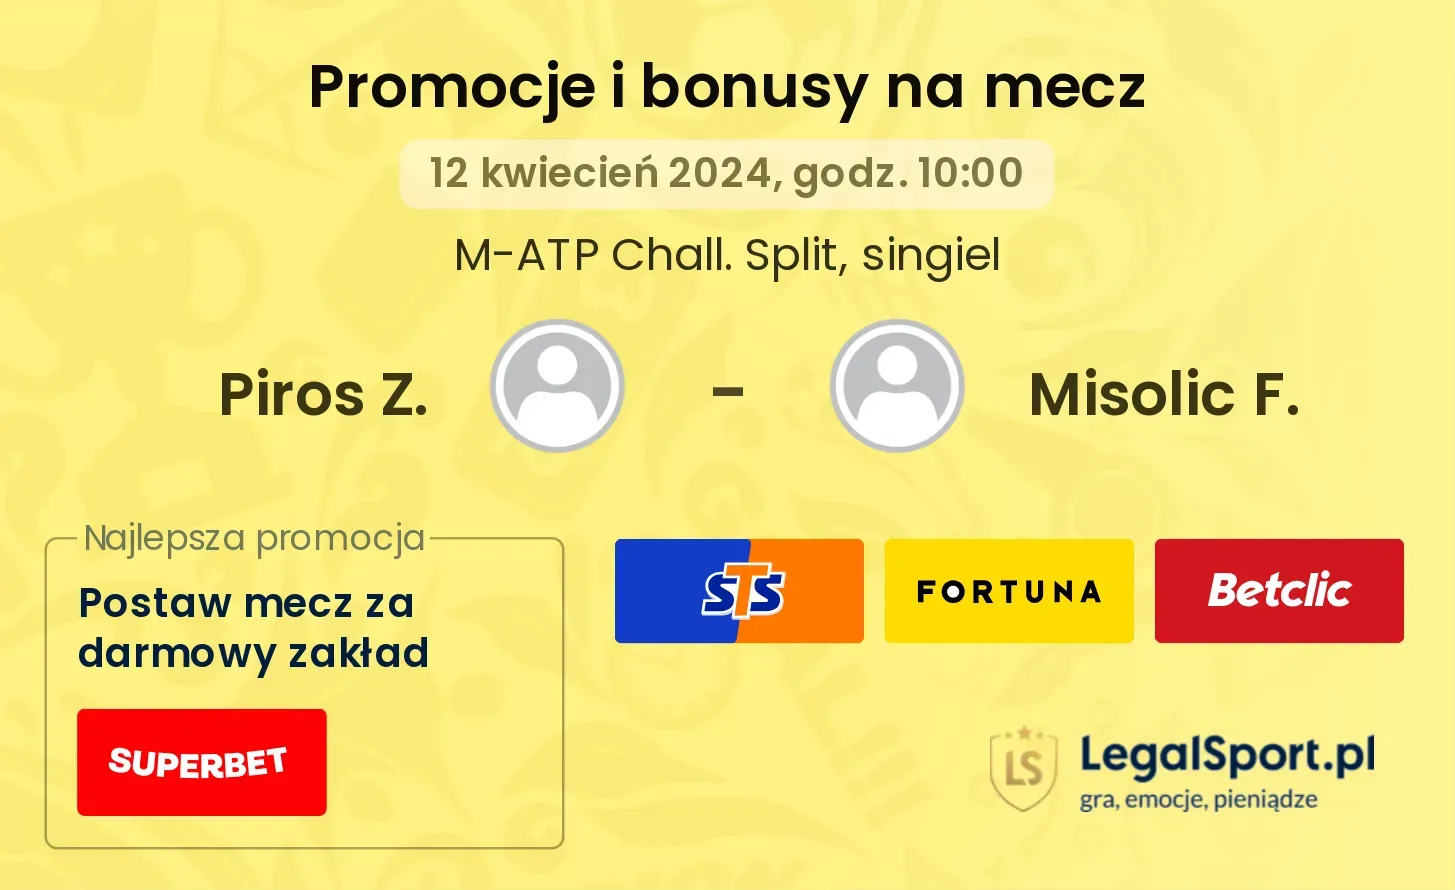 Piros Z. - Misolic F. promocje bonusy na mecz